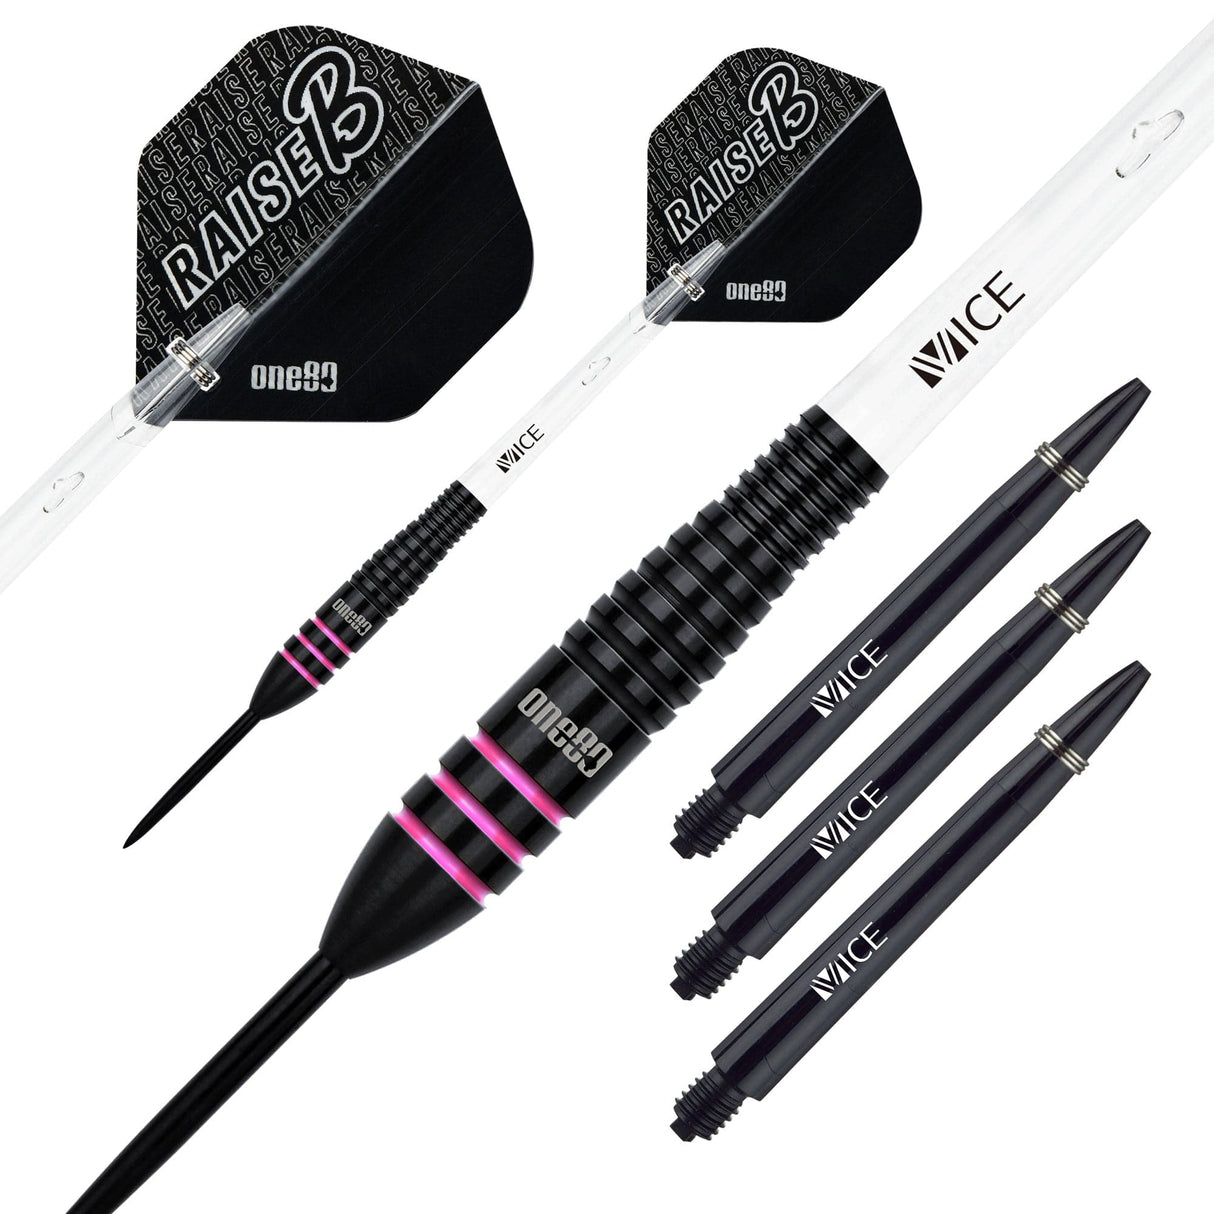 One80 Raise B Darts - Steel Tip - Black - Pink Rings